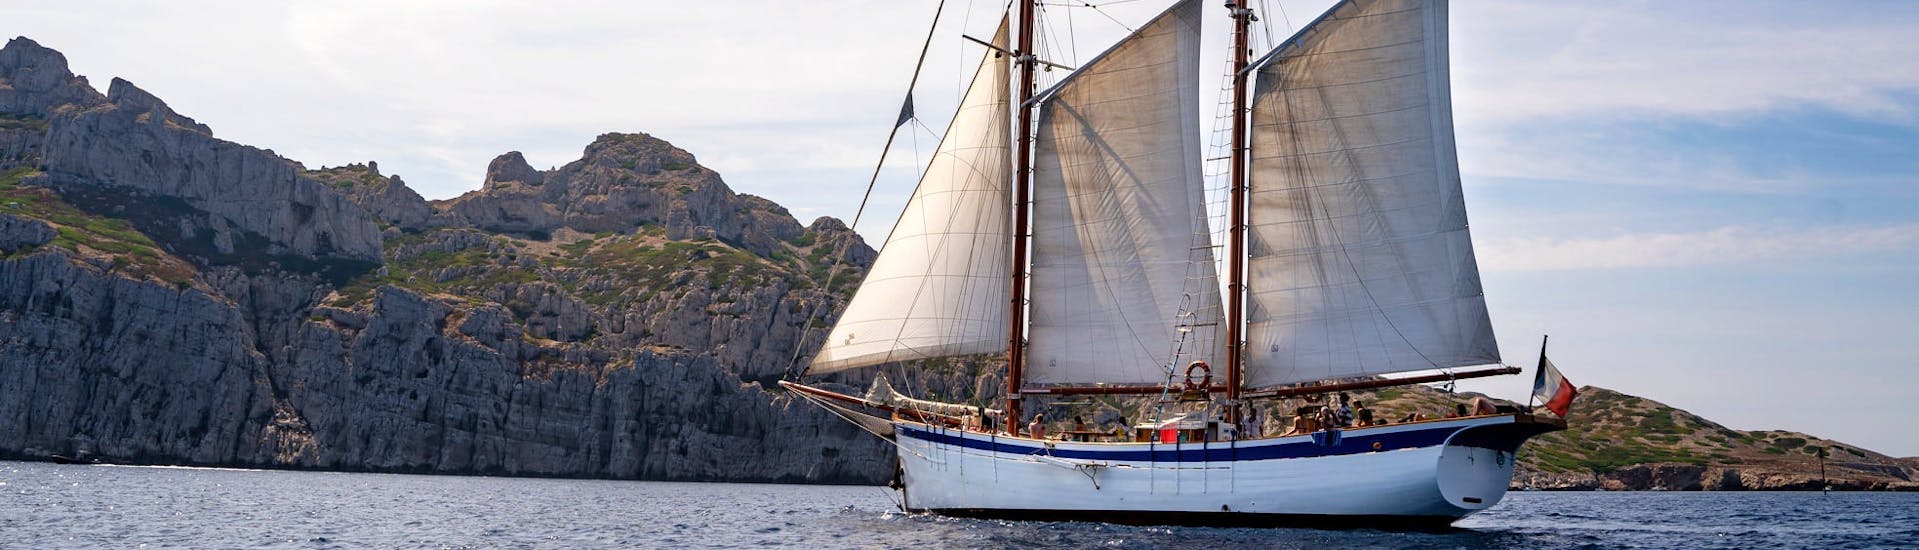 Unser Boot La Goélette Alliance, aufgenommen während der Segeltour zu den Calanques von Marseille mit Schnorcheln.